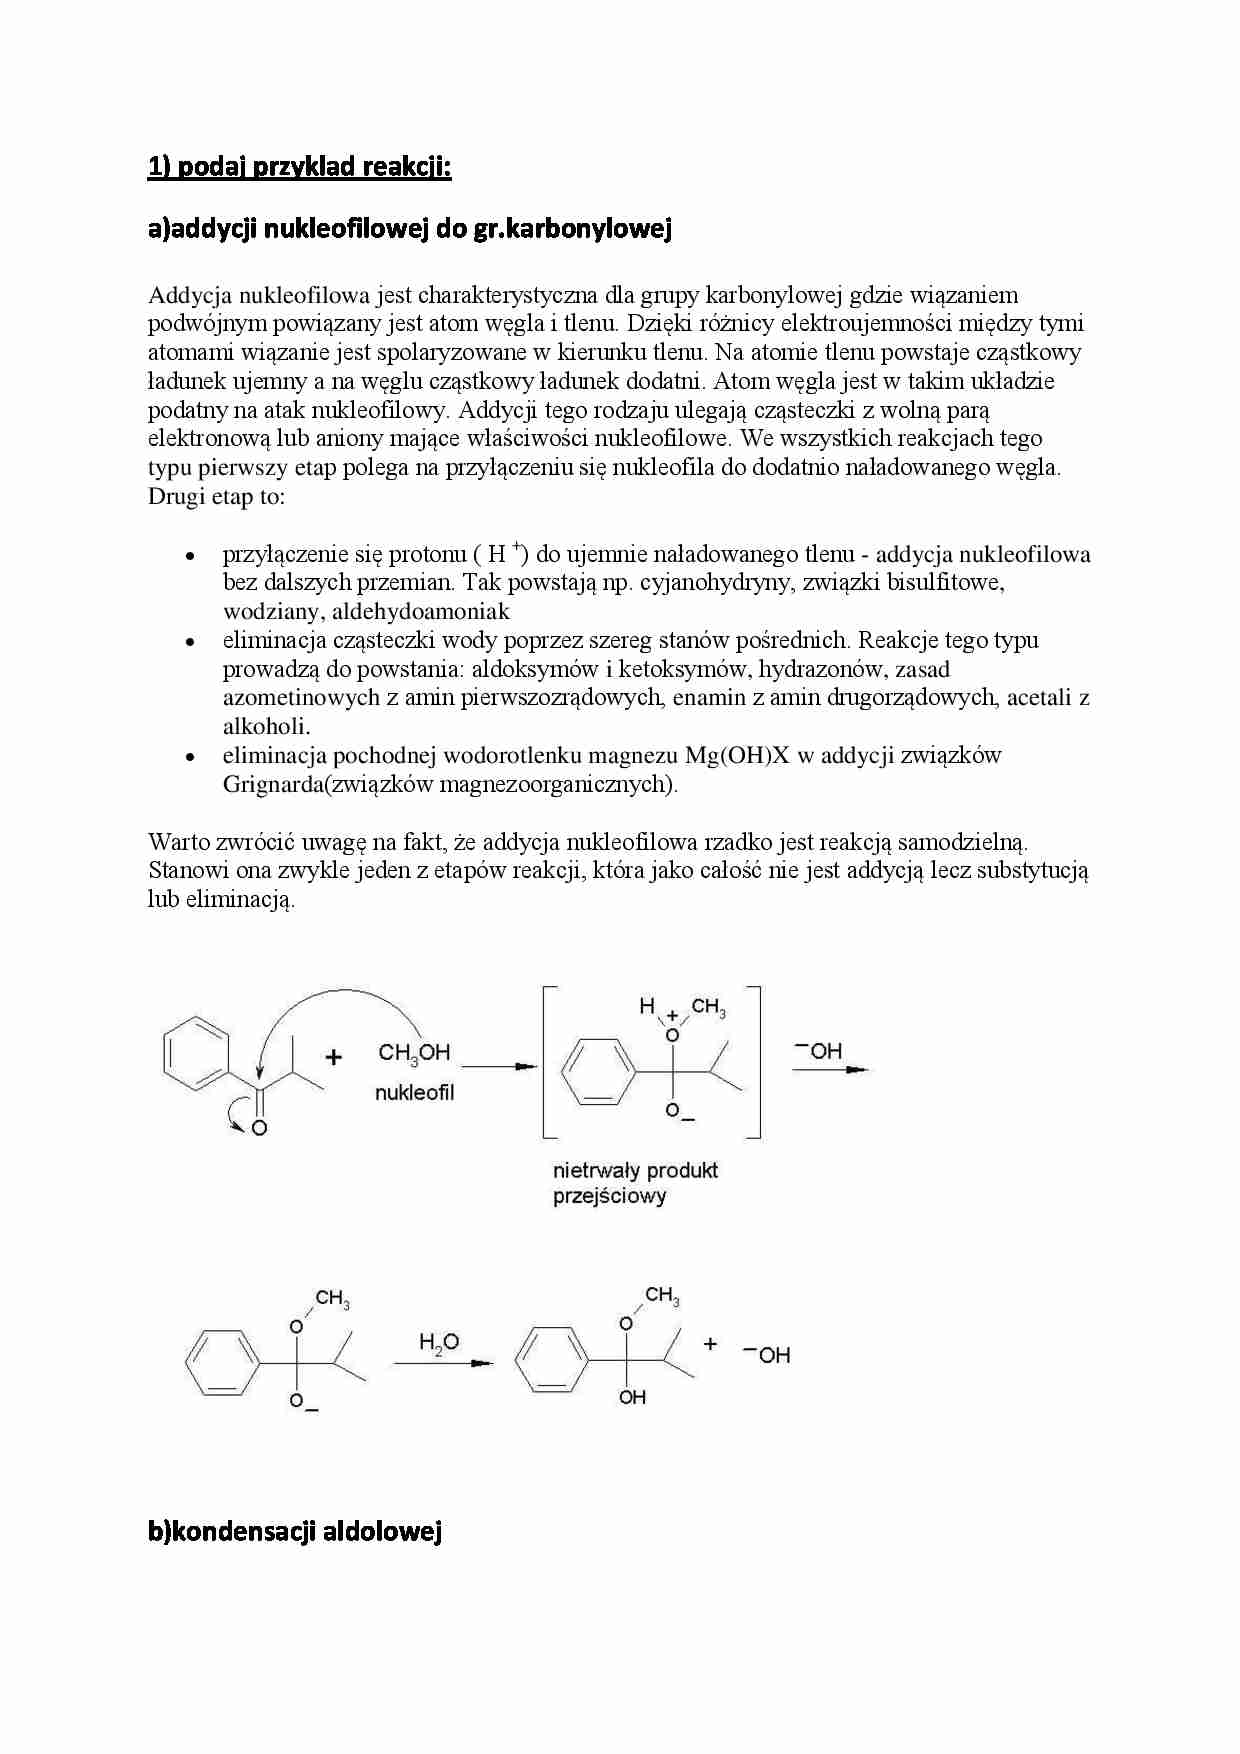 Chemia organiczna - egzamin - addycja nukleofilowa - strona 1